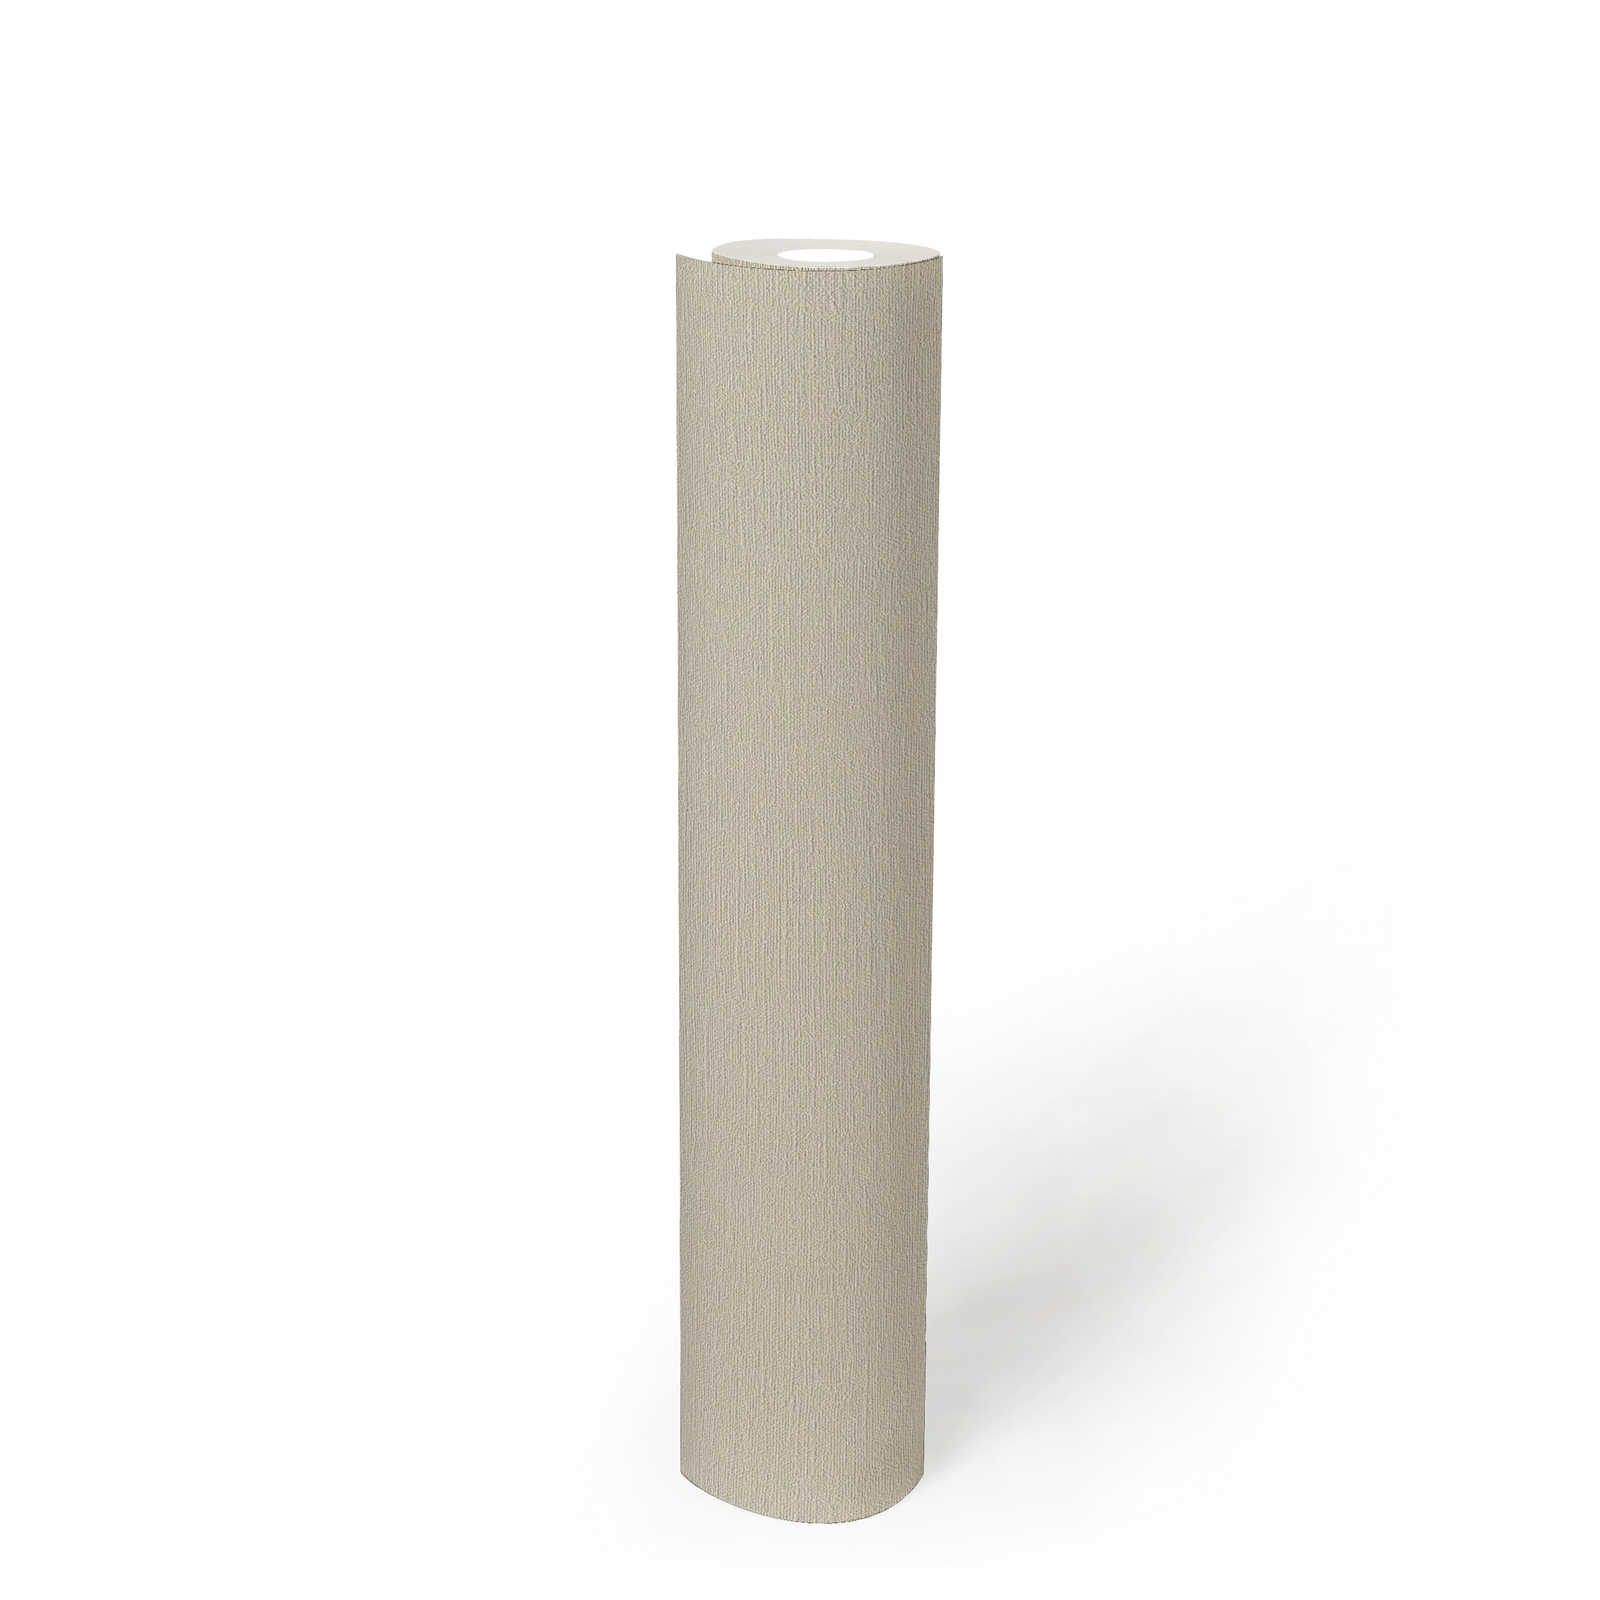             Unitapete mit feiner Struktur PVC-freies Vlies – Beige, Grau
        